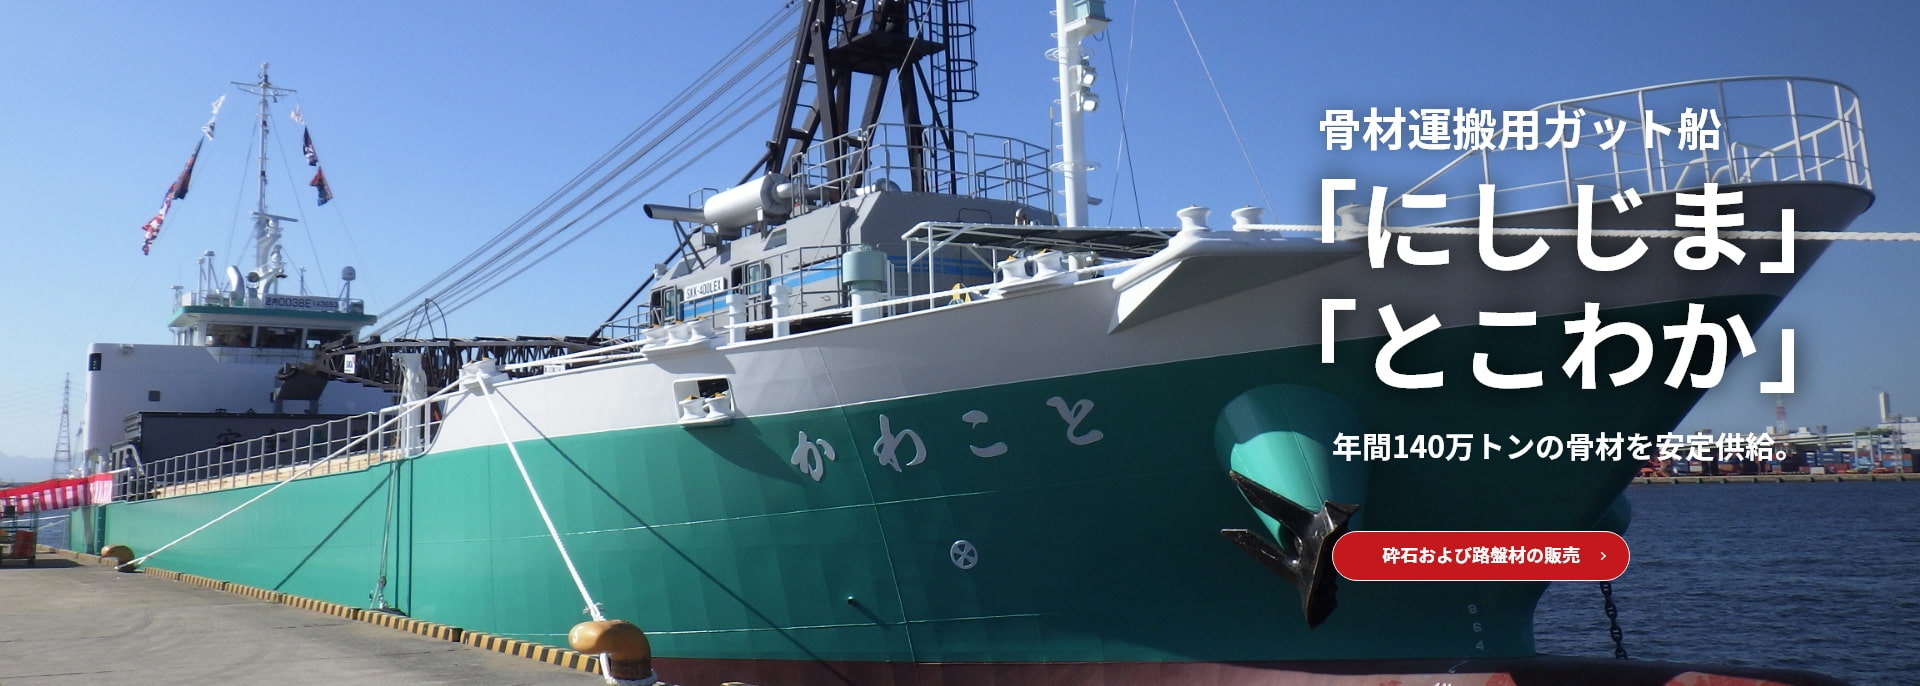 骨材運搬用ガット船「にしじま」「とこわか」。年間140万トンの骨材を安定供給。